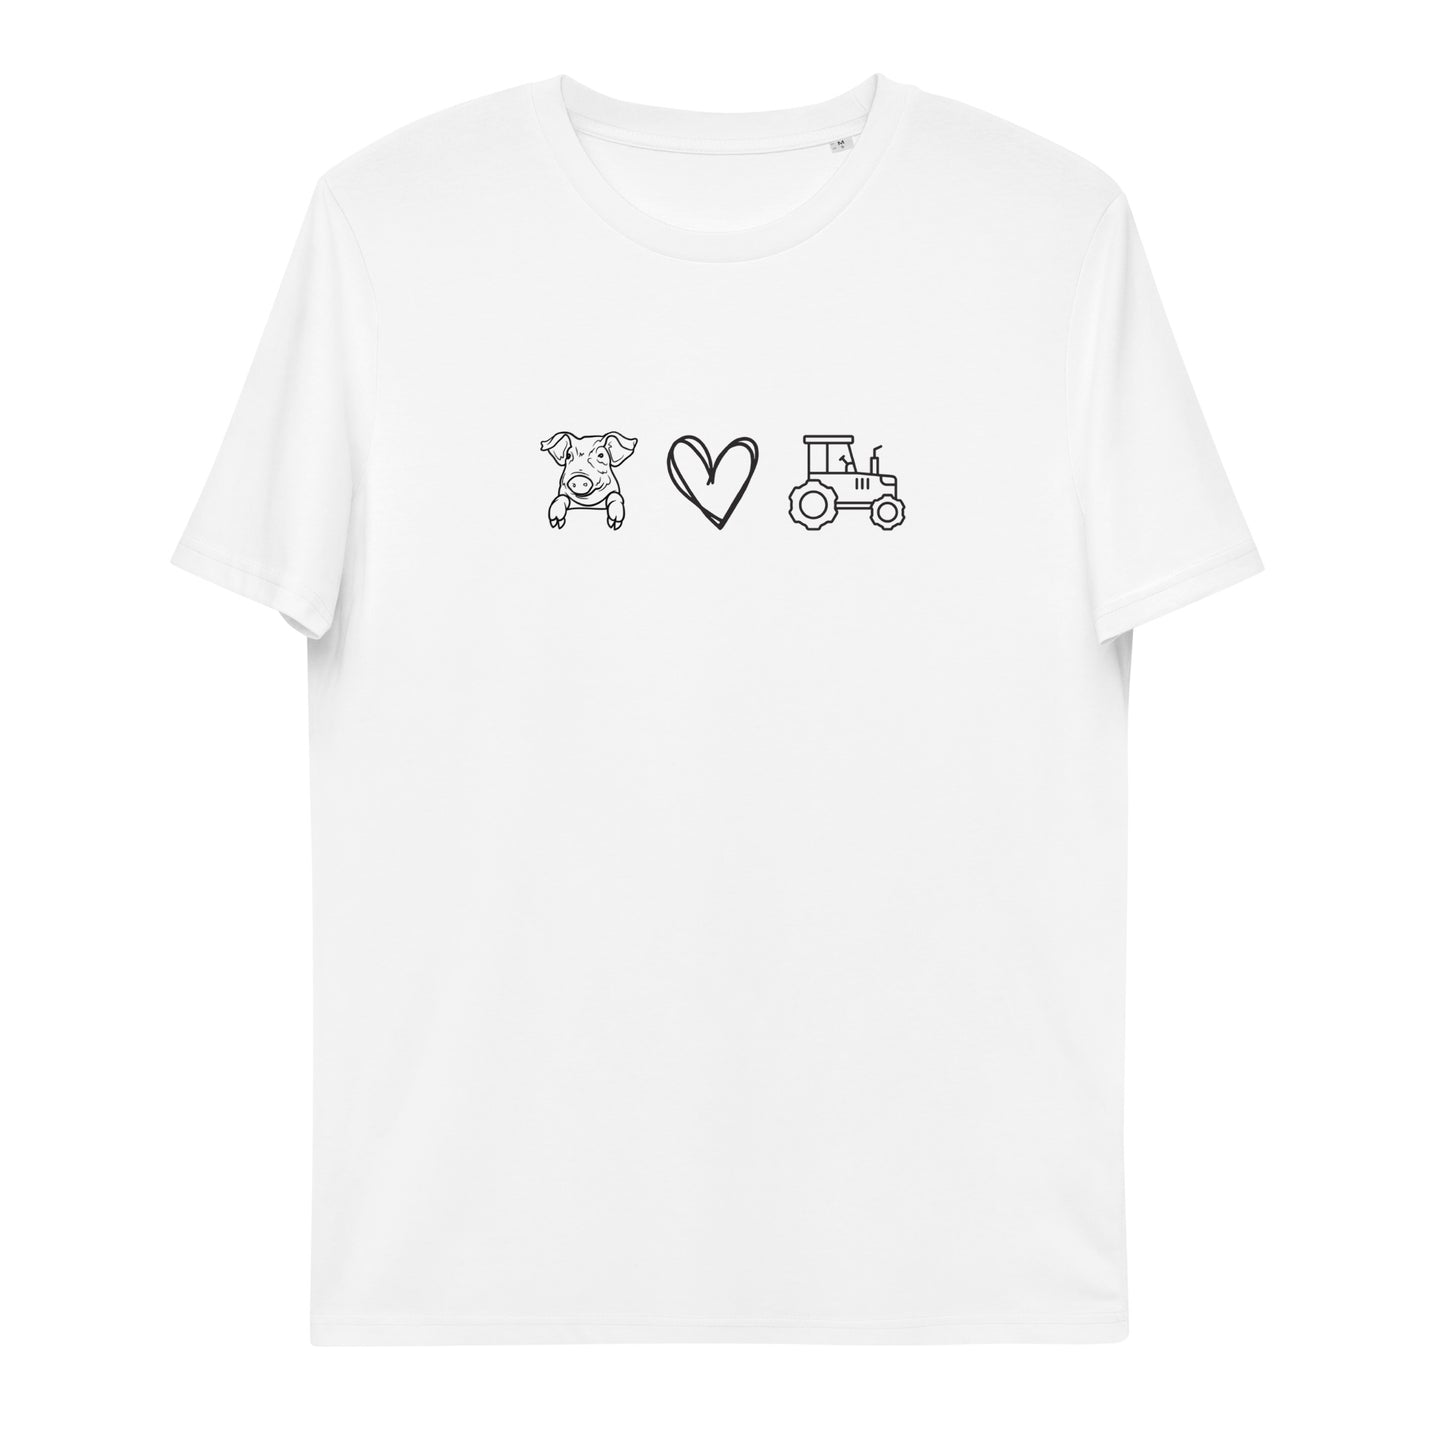 Schweinchenliebe - Unisex T-Shirt